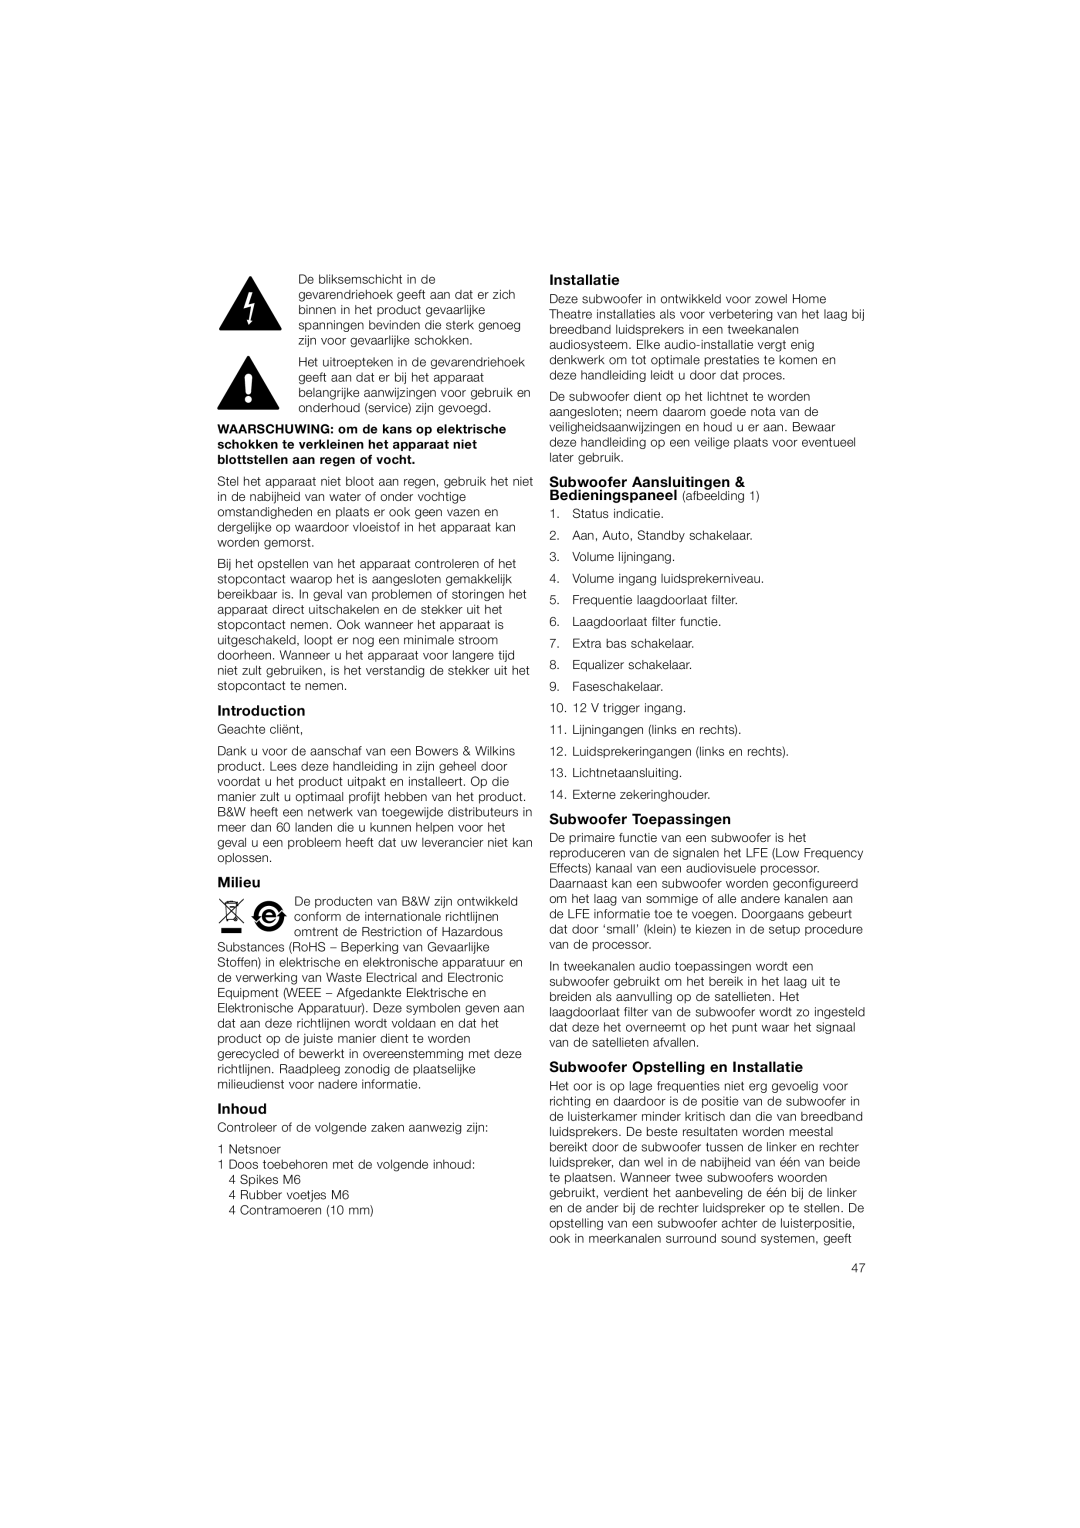 Bowers & Wilkins ASW610XP Introduction, Milieu, Inhoud, Installatie, Subwoofer Aansluitingen Bedieningspaneel afbeelding 